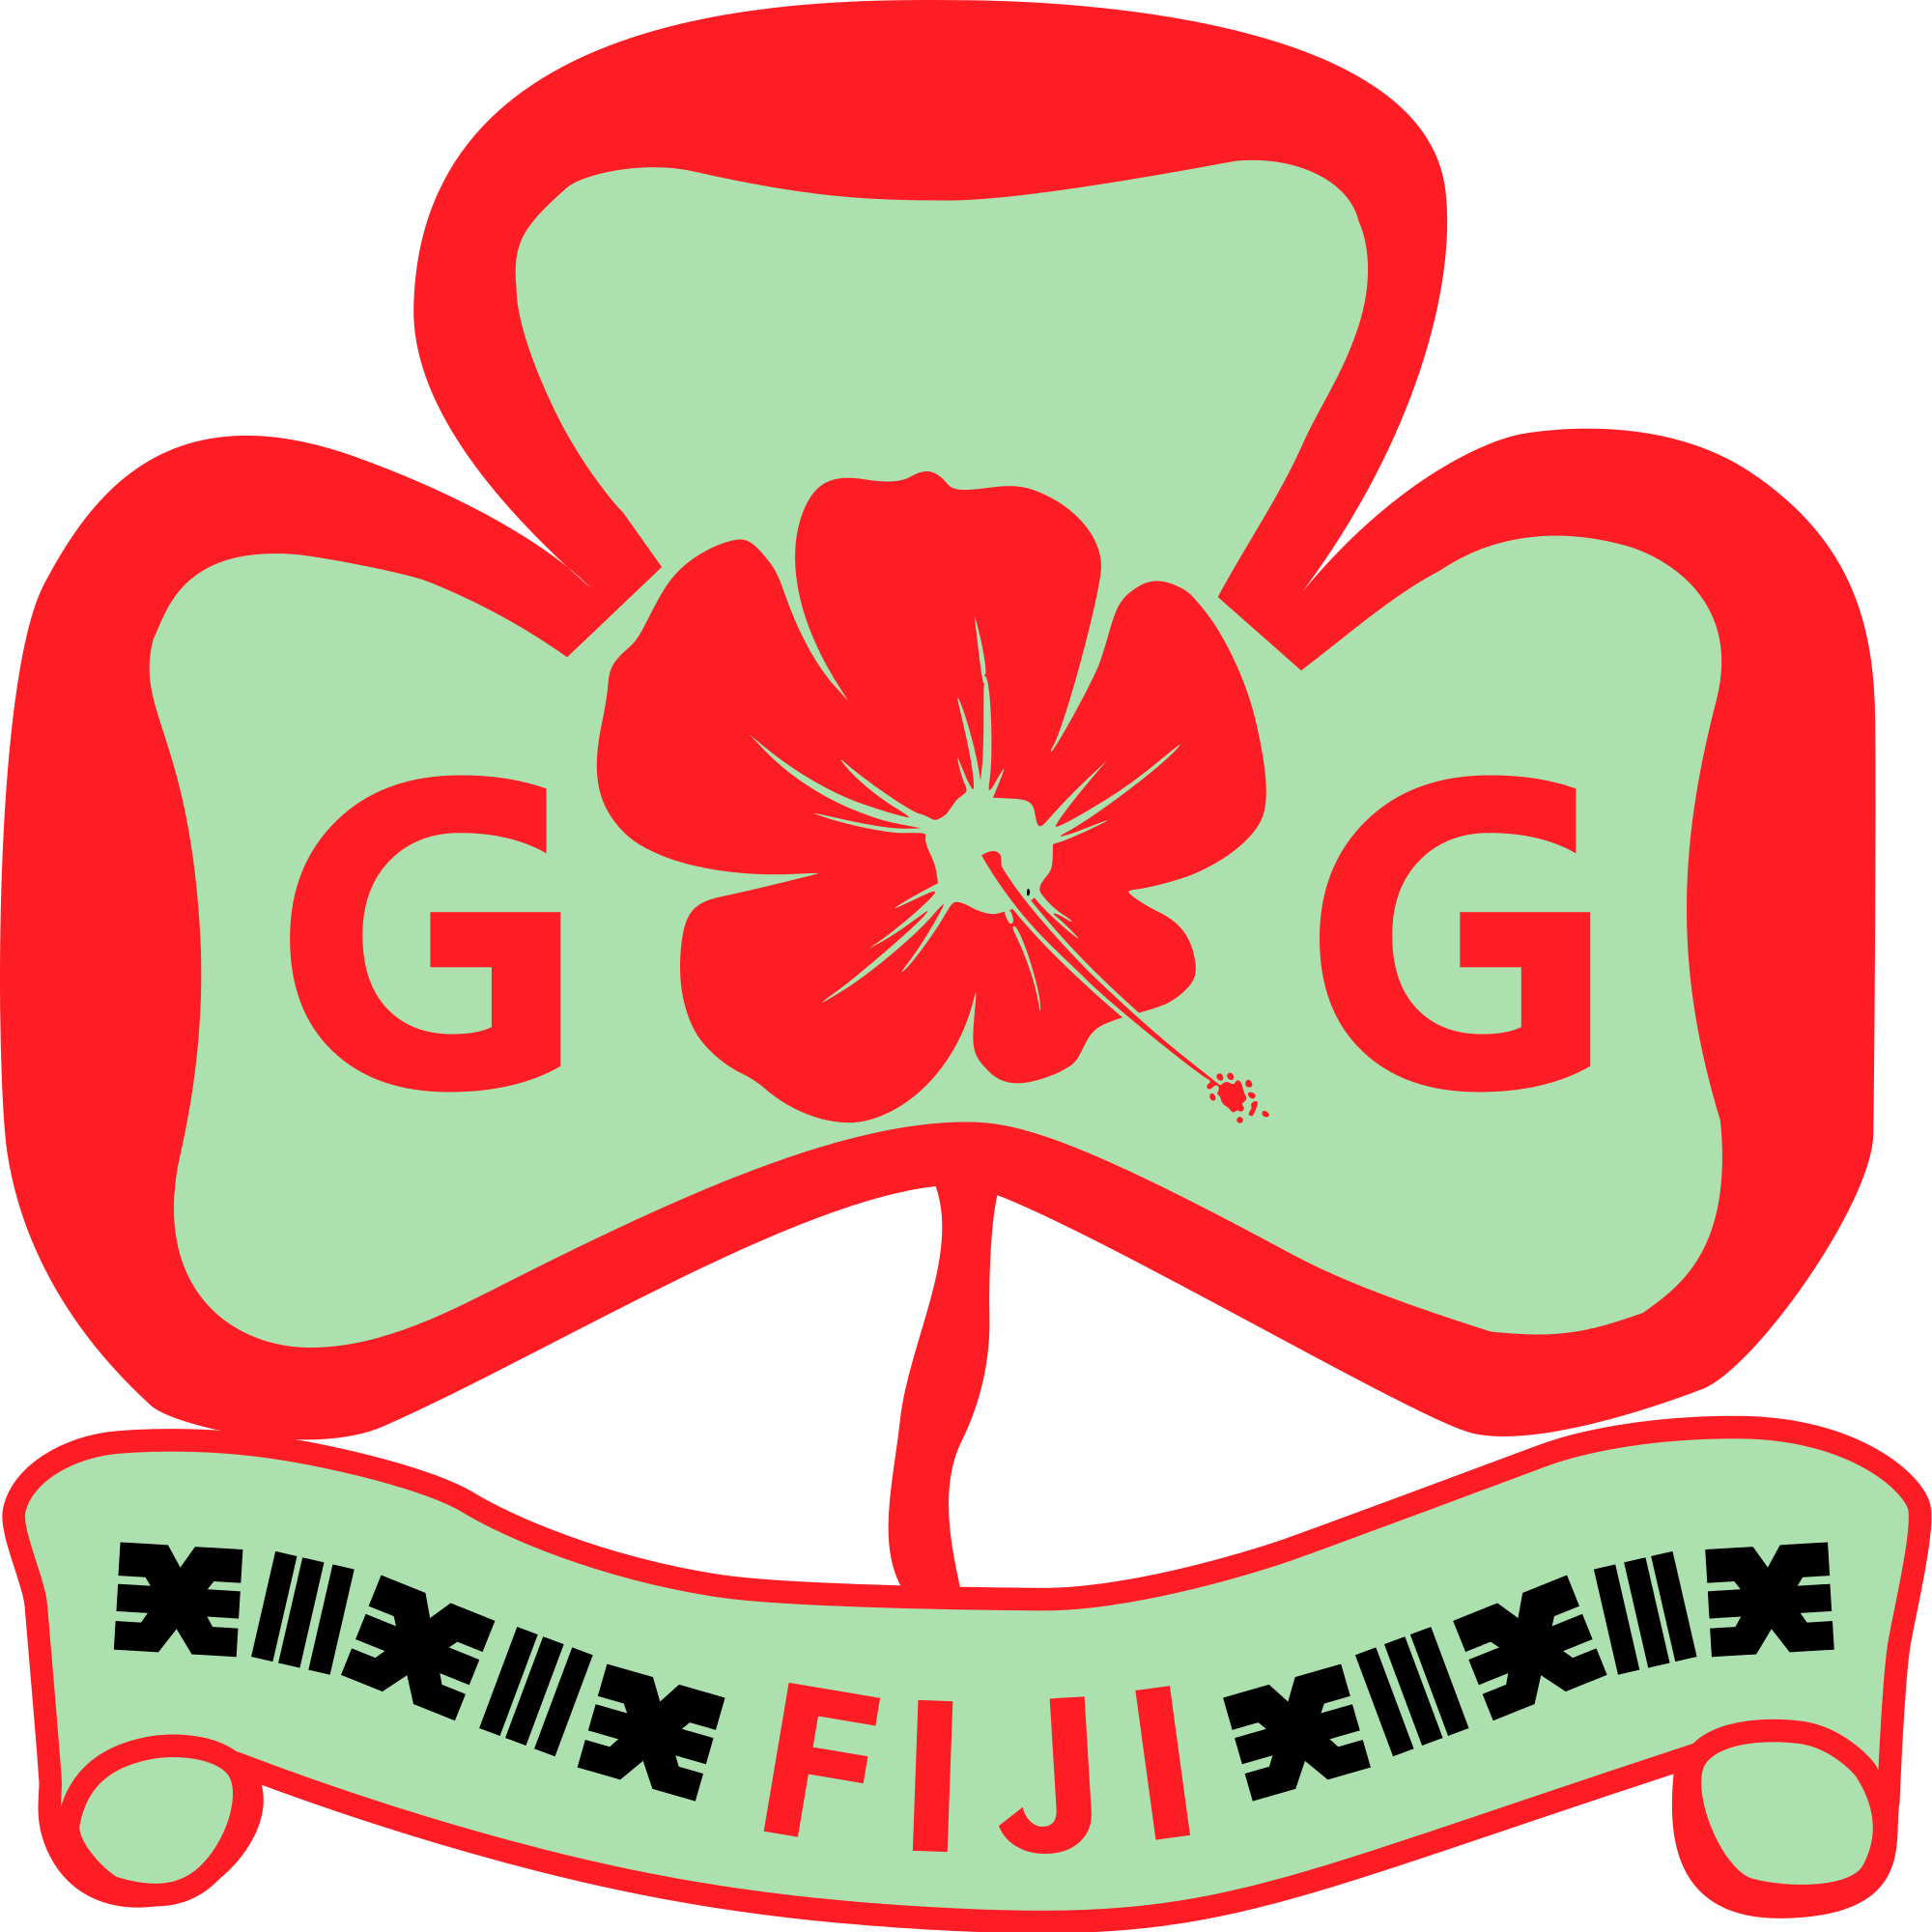 Fiji Girl Guides Association - Fiji Girl Guide Association (2000x2000)